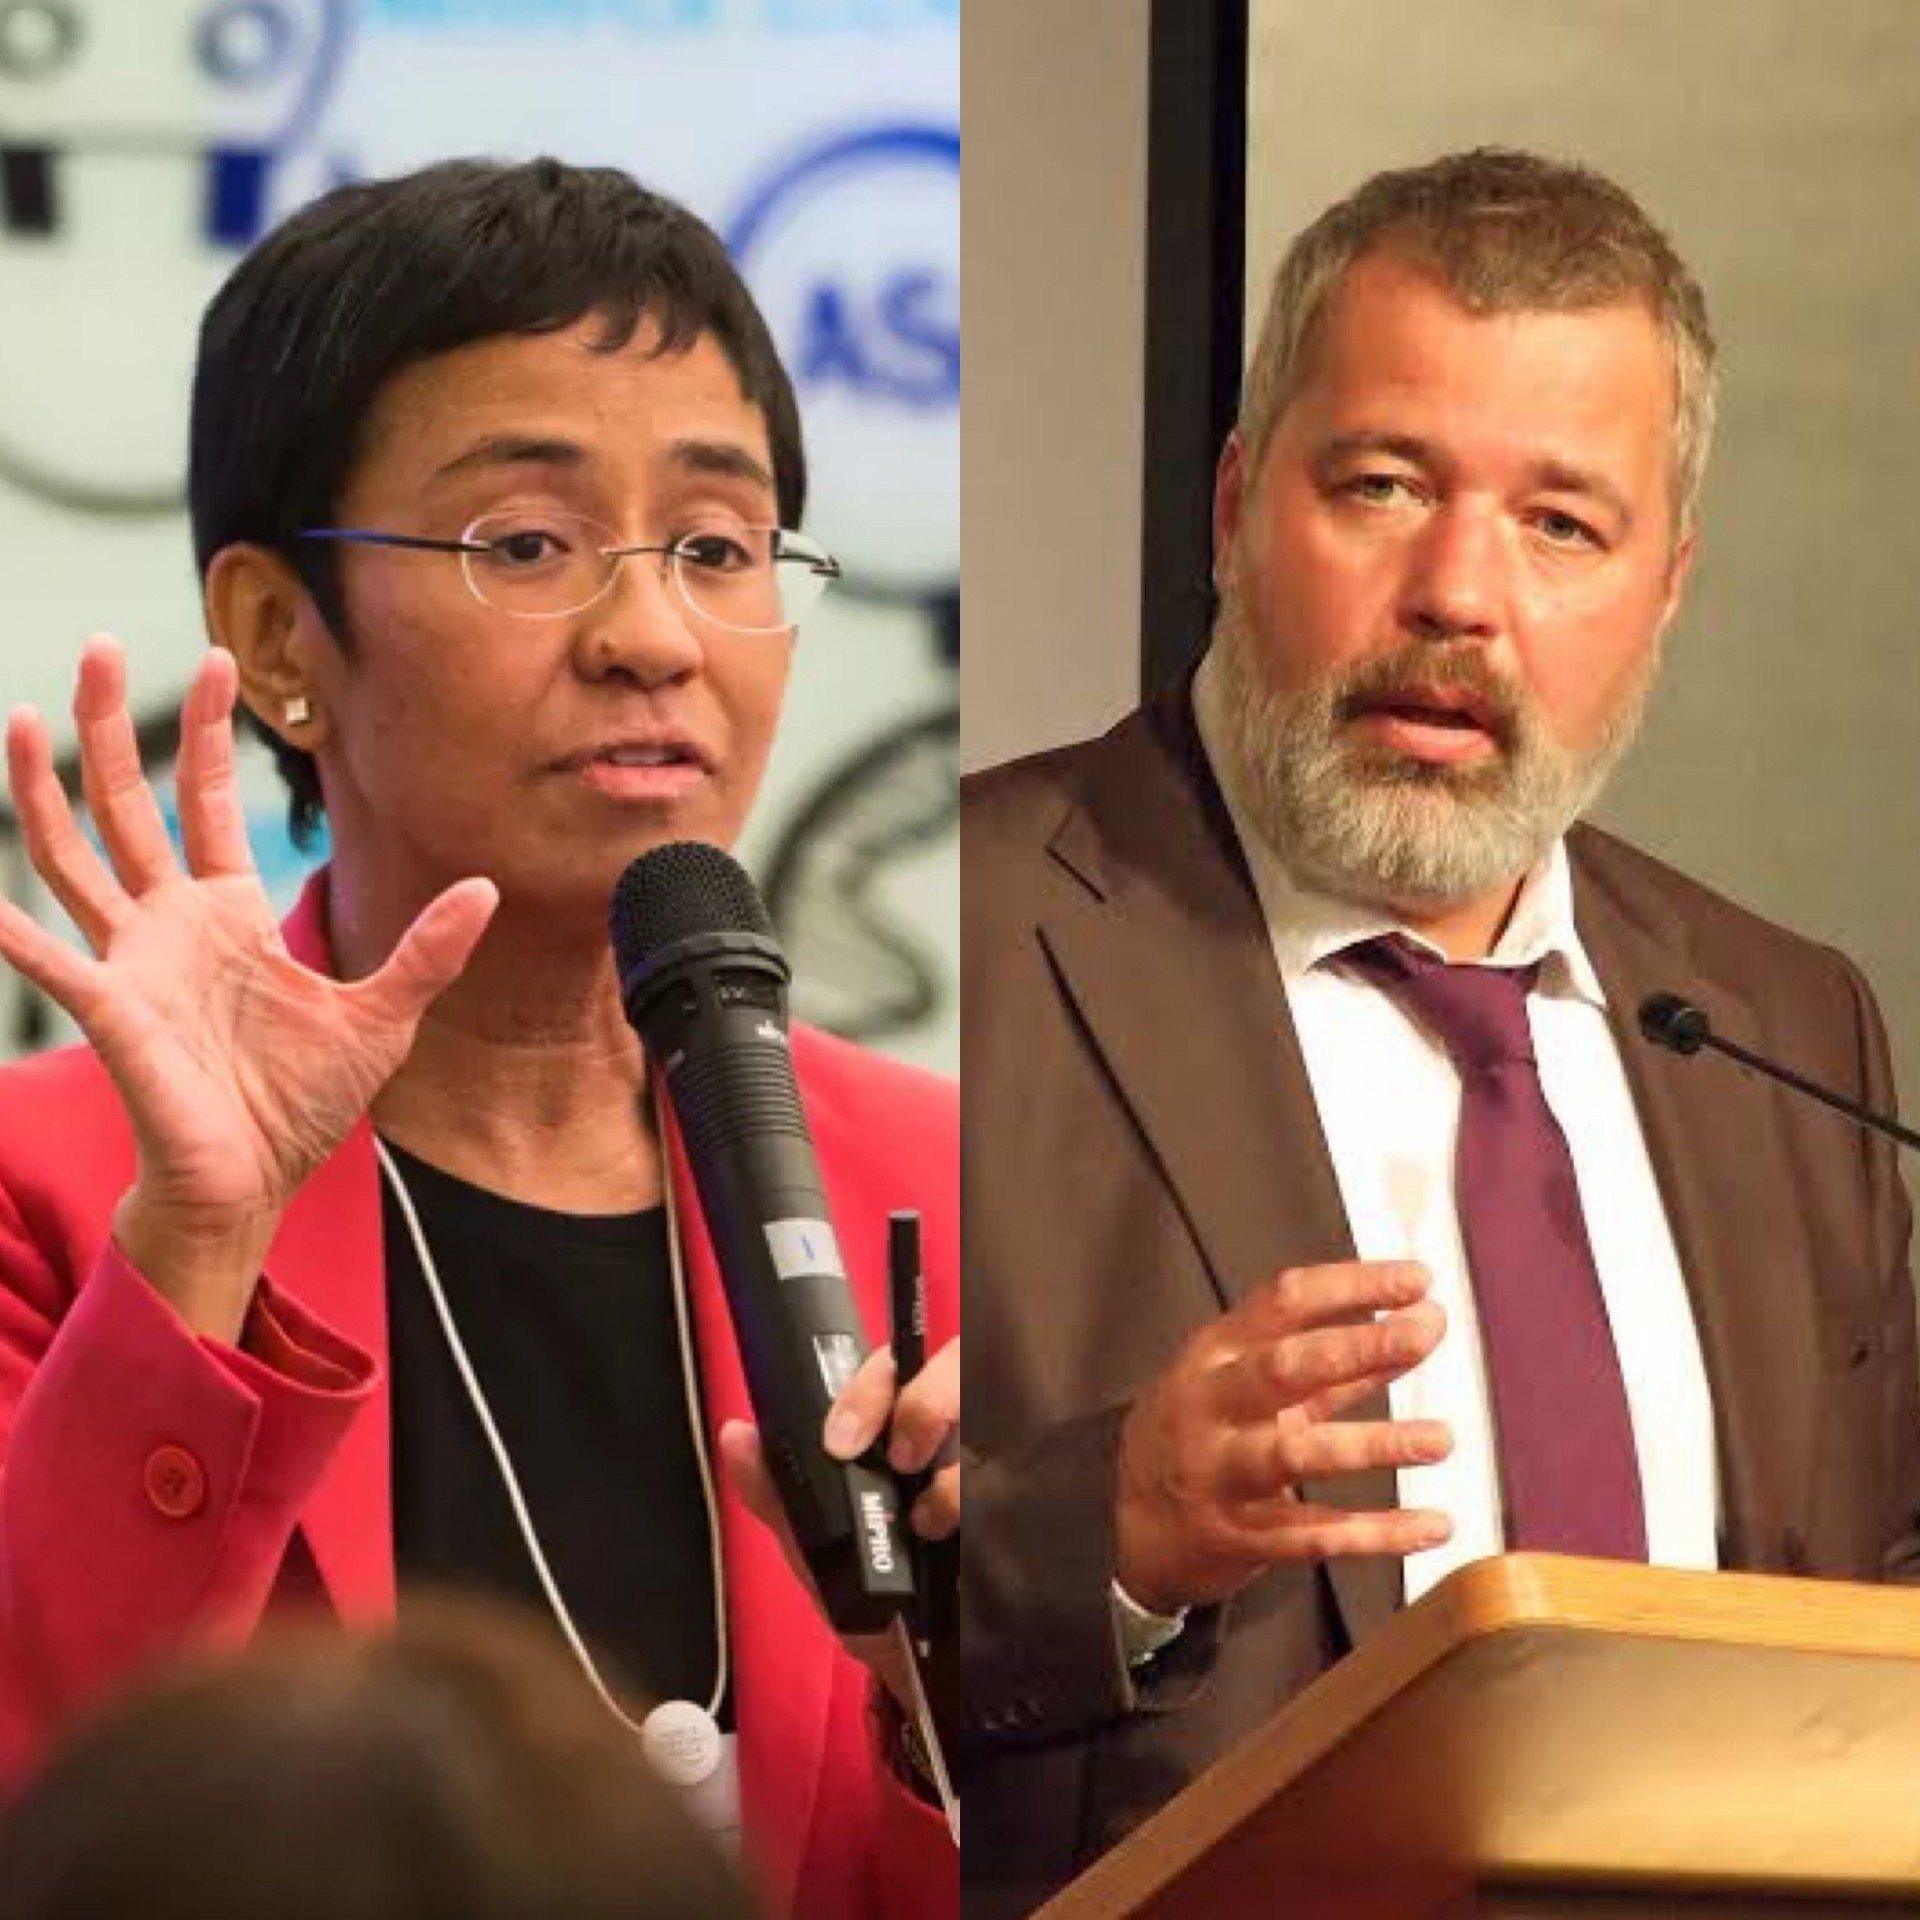 Os jornalistas Maria Ressa, das Filipinas, e Dmitry Andreyevich Muratov, da Rússia, ganharam o prêmio Nobel da Paz 2021 "pelo esforço para proteger a liberdade de expressão" (Foto: Reprodução)